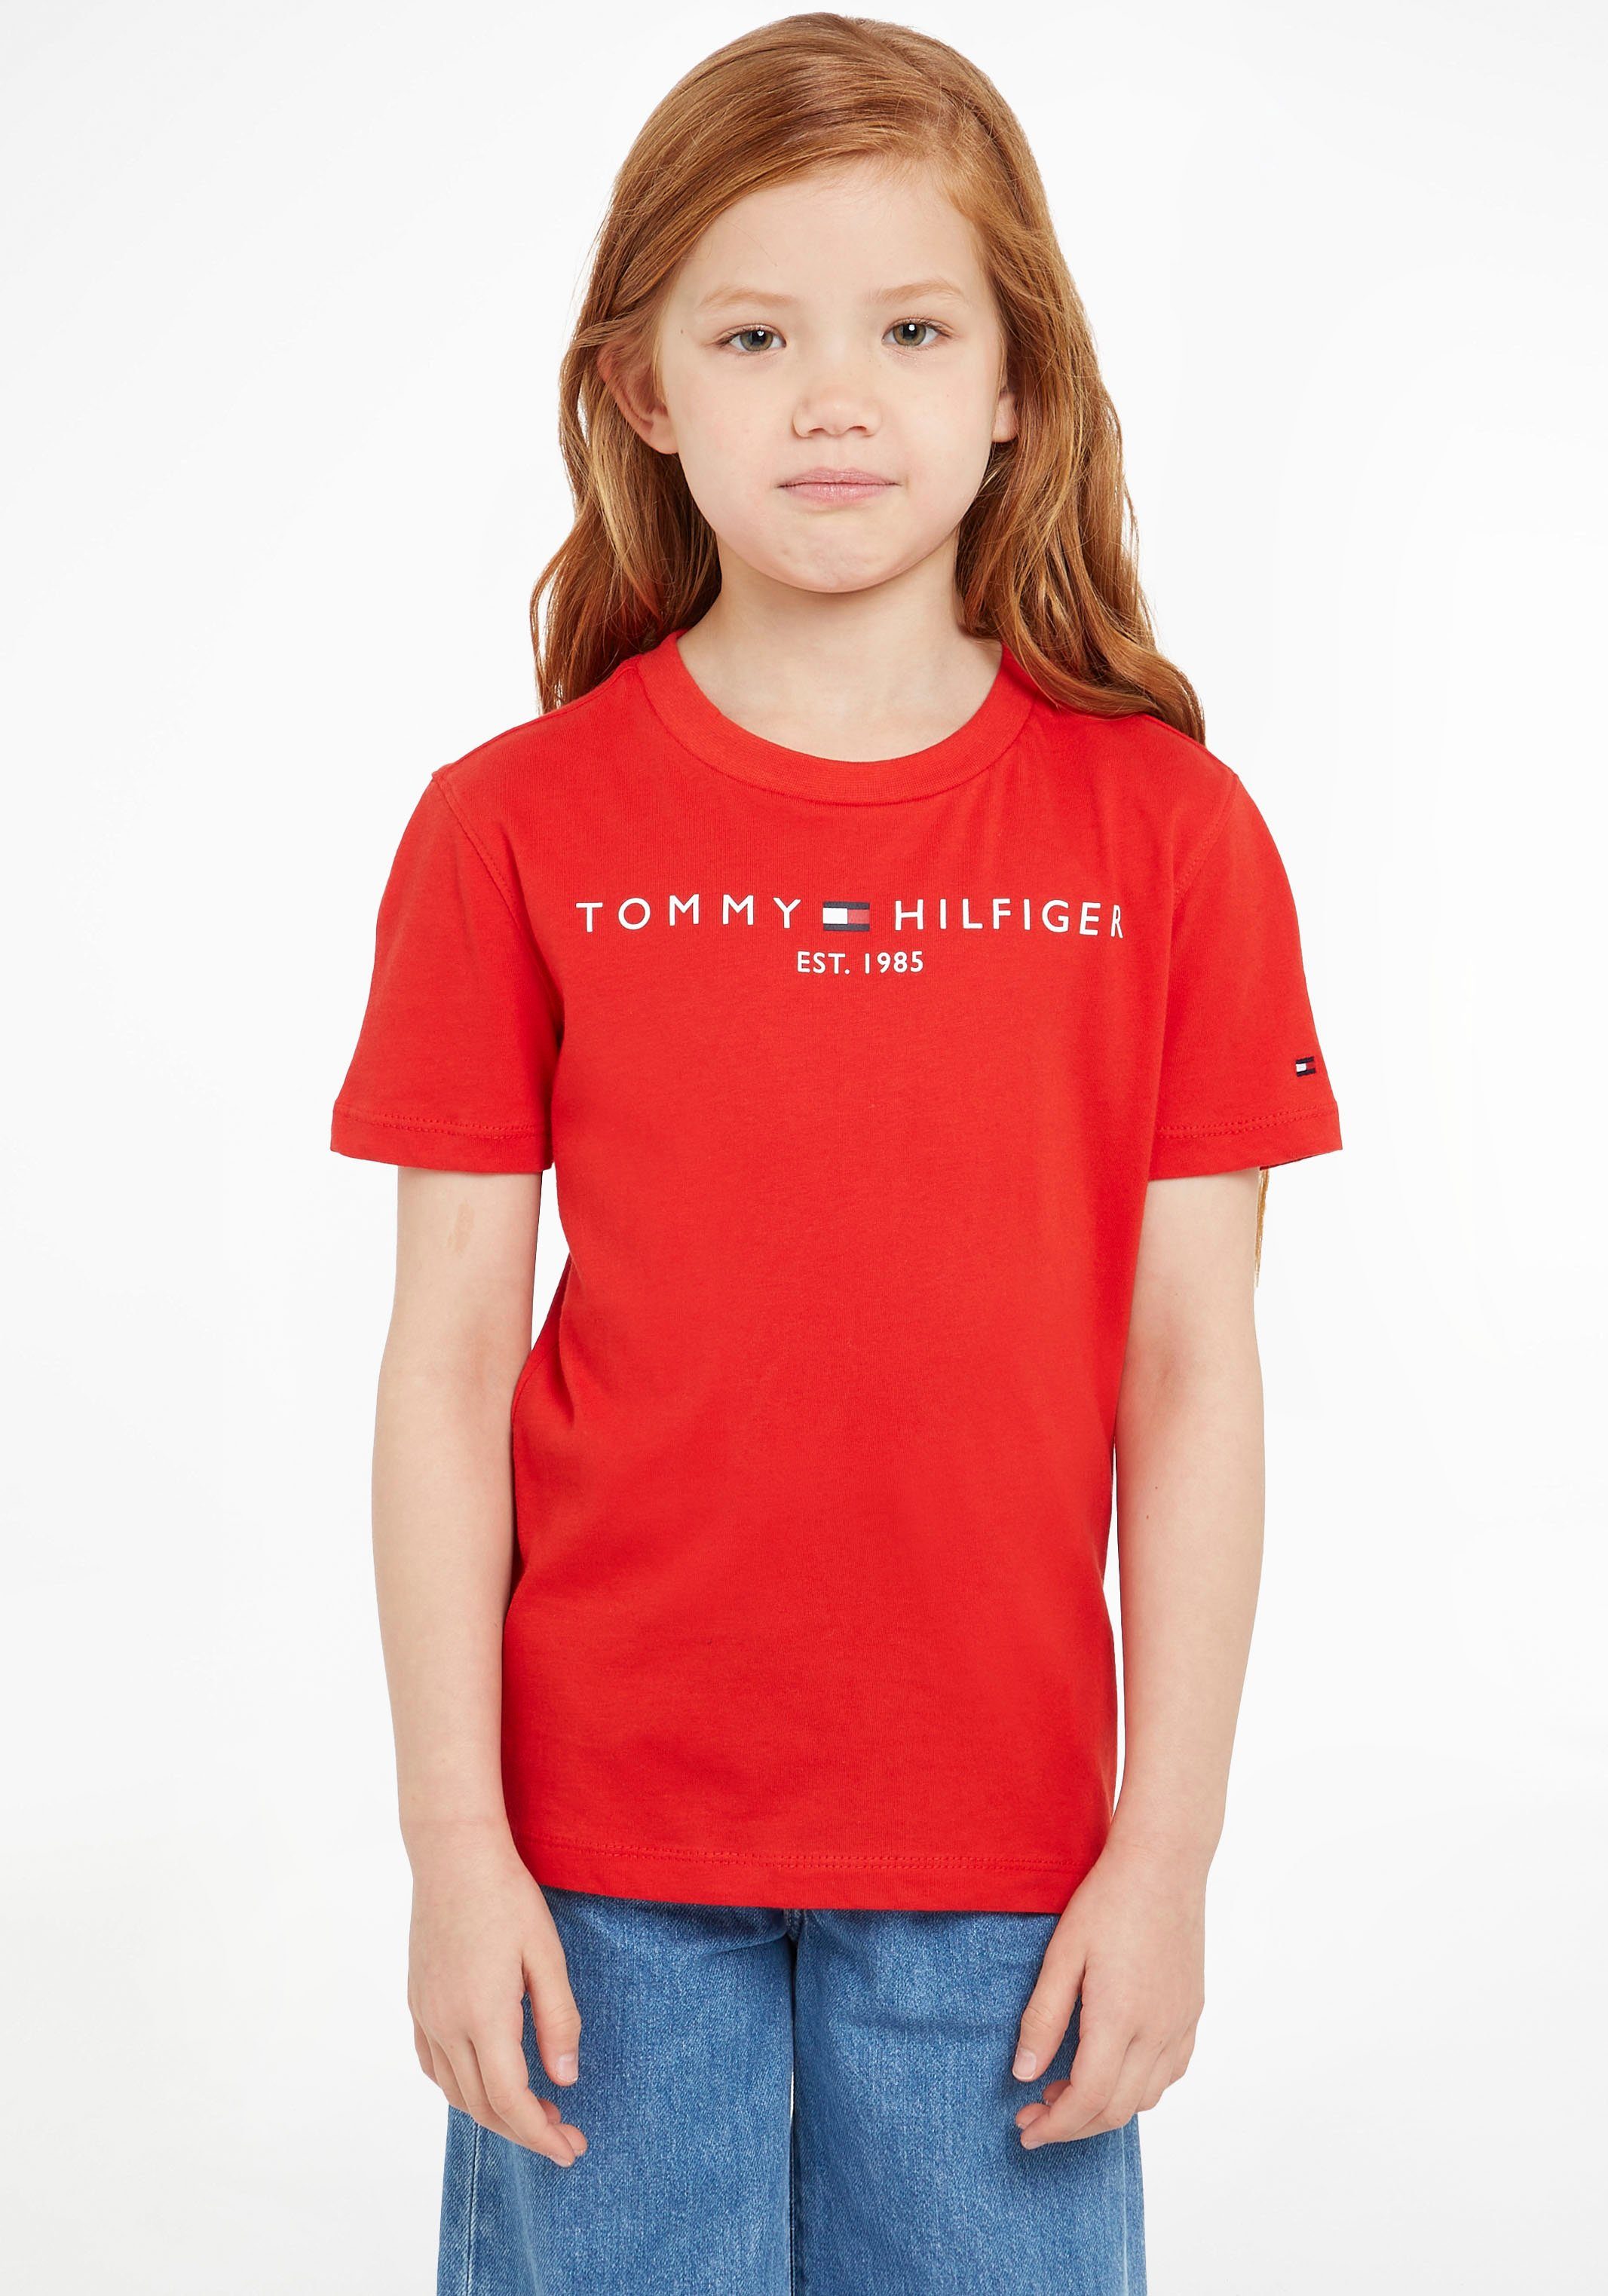 Tommy TEE Kinder T-Shirt ESSENTIAL Hilfiger Jungen MiniMe,für und Junior Mädchen Kids